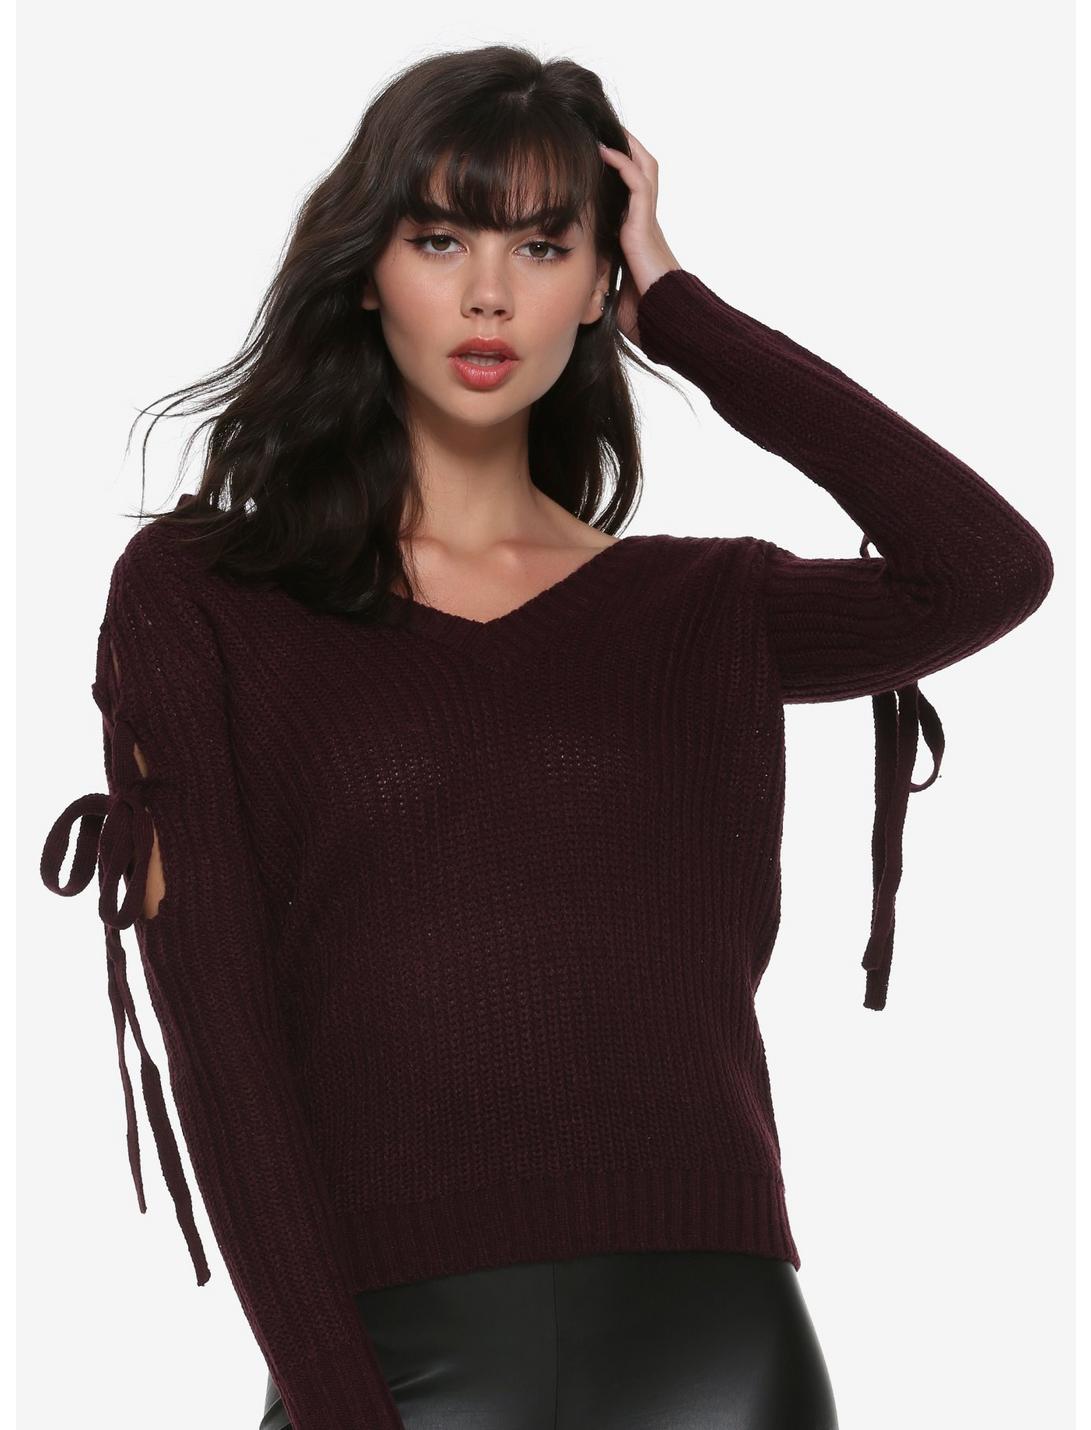 Burgundy Lace-Up Cold Shoulder Girls Sweater, PLUM, hi-res